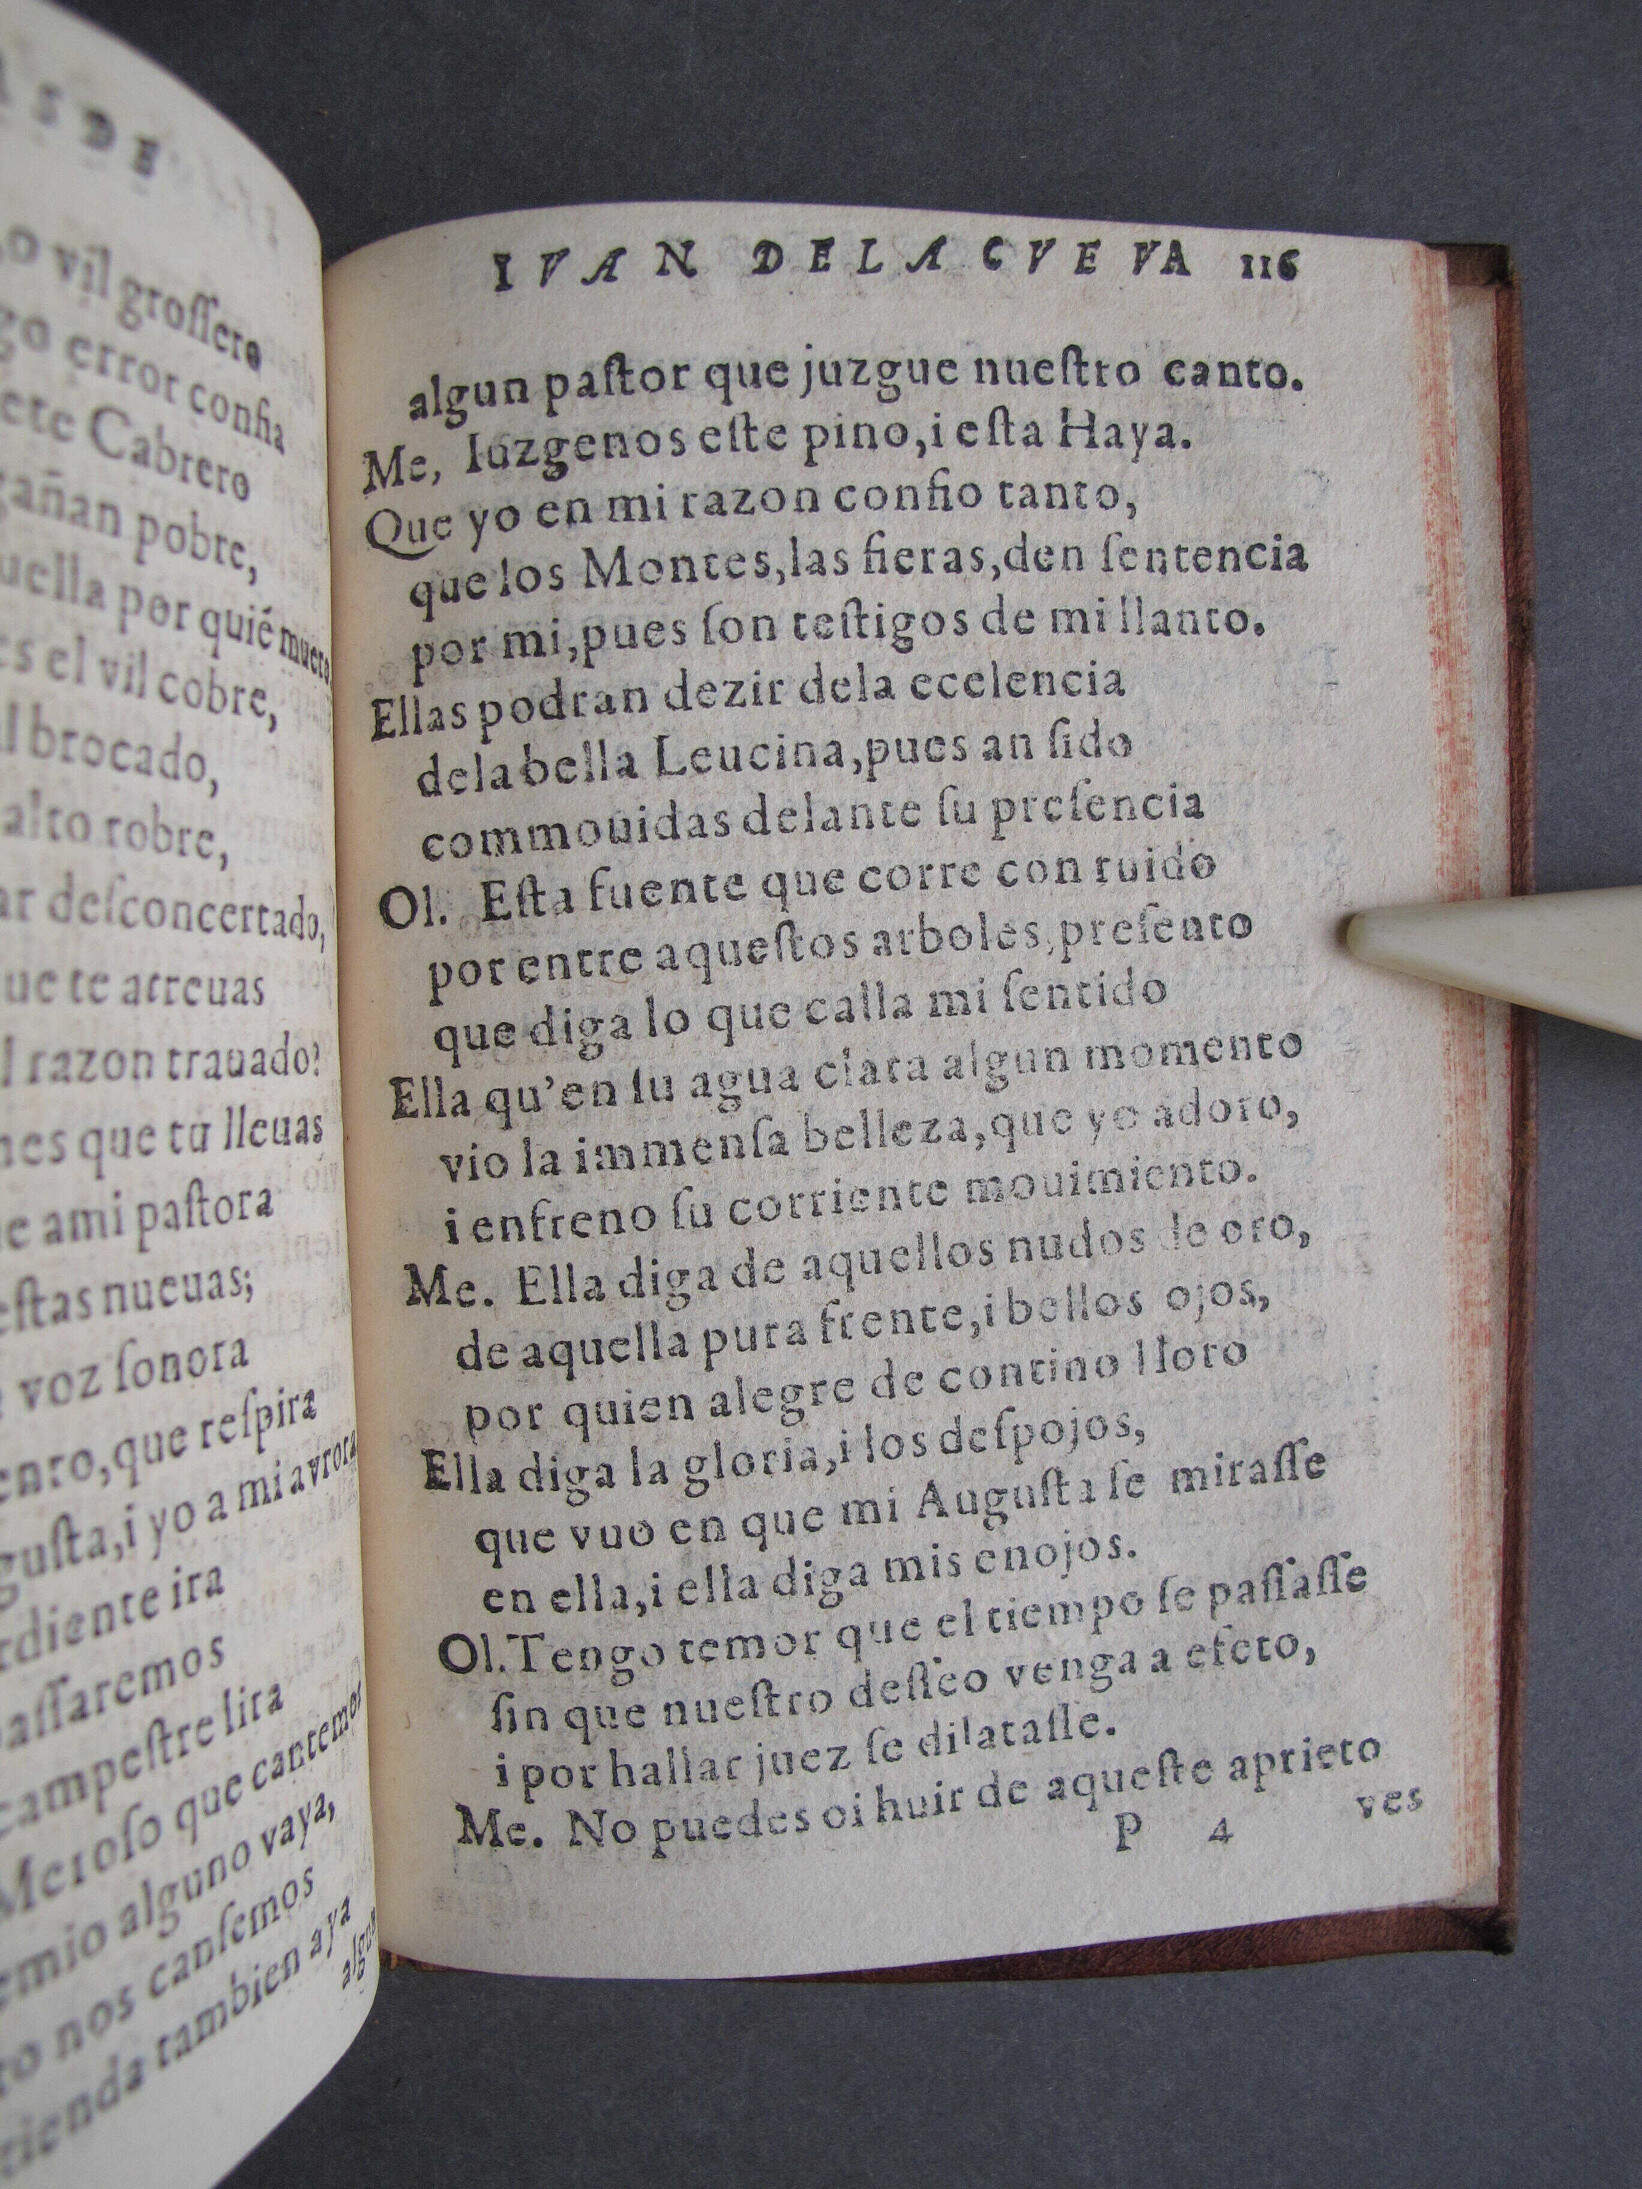 Folio P4